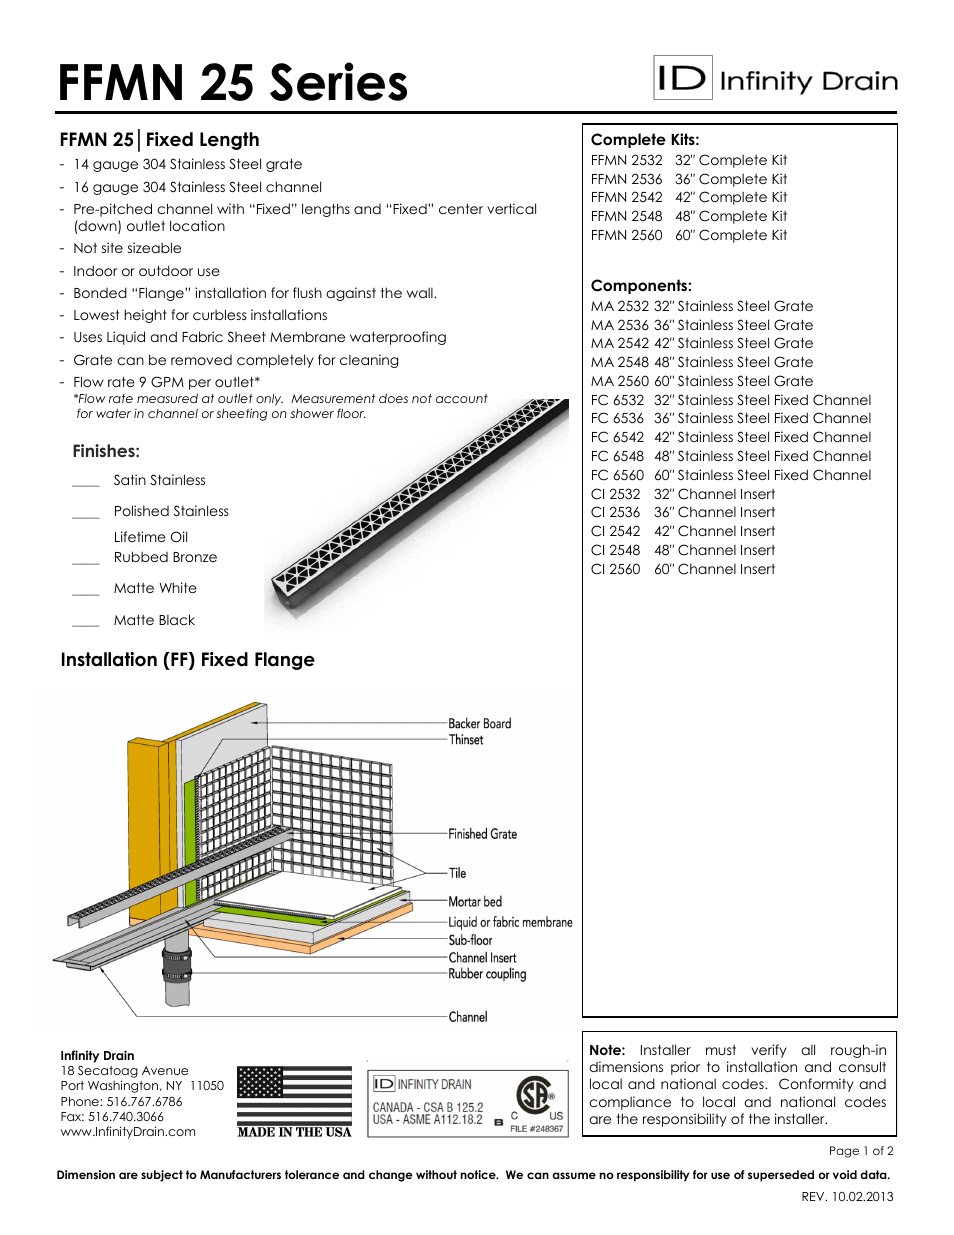 FFMN 2532 Series Submittal Sheet PDF